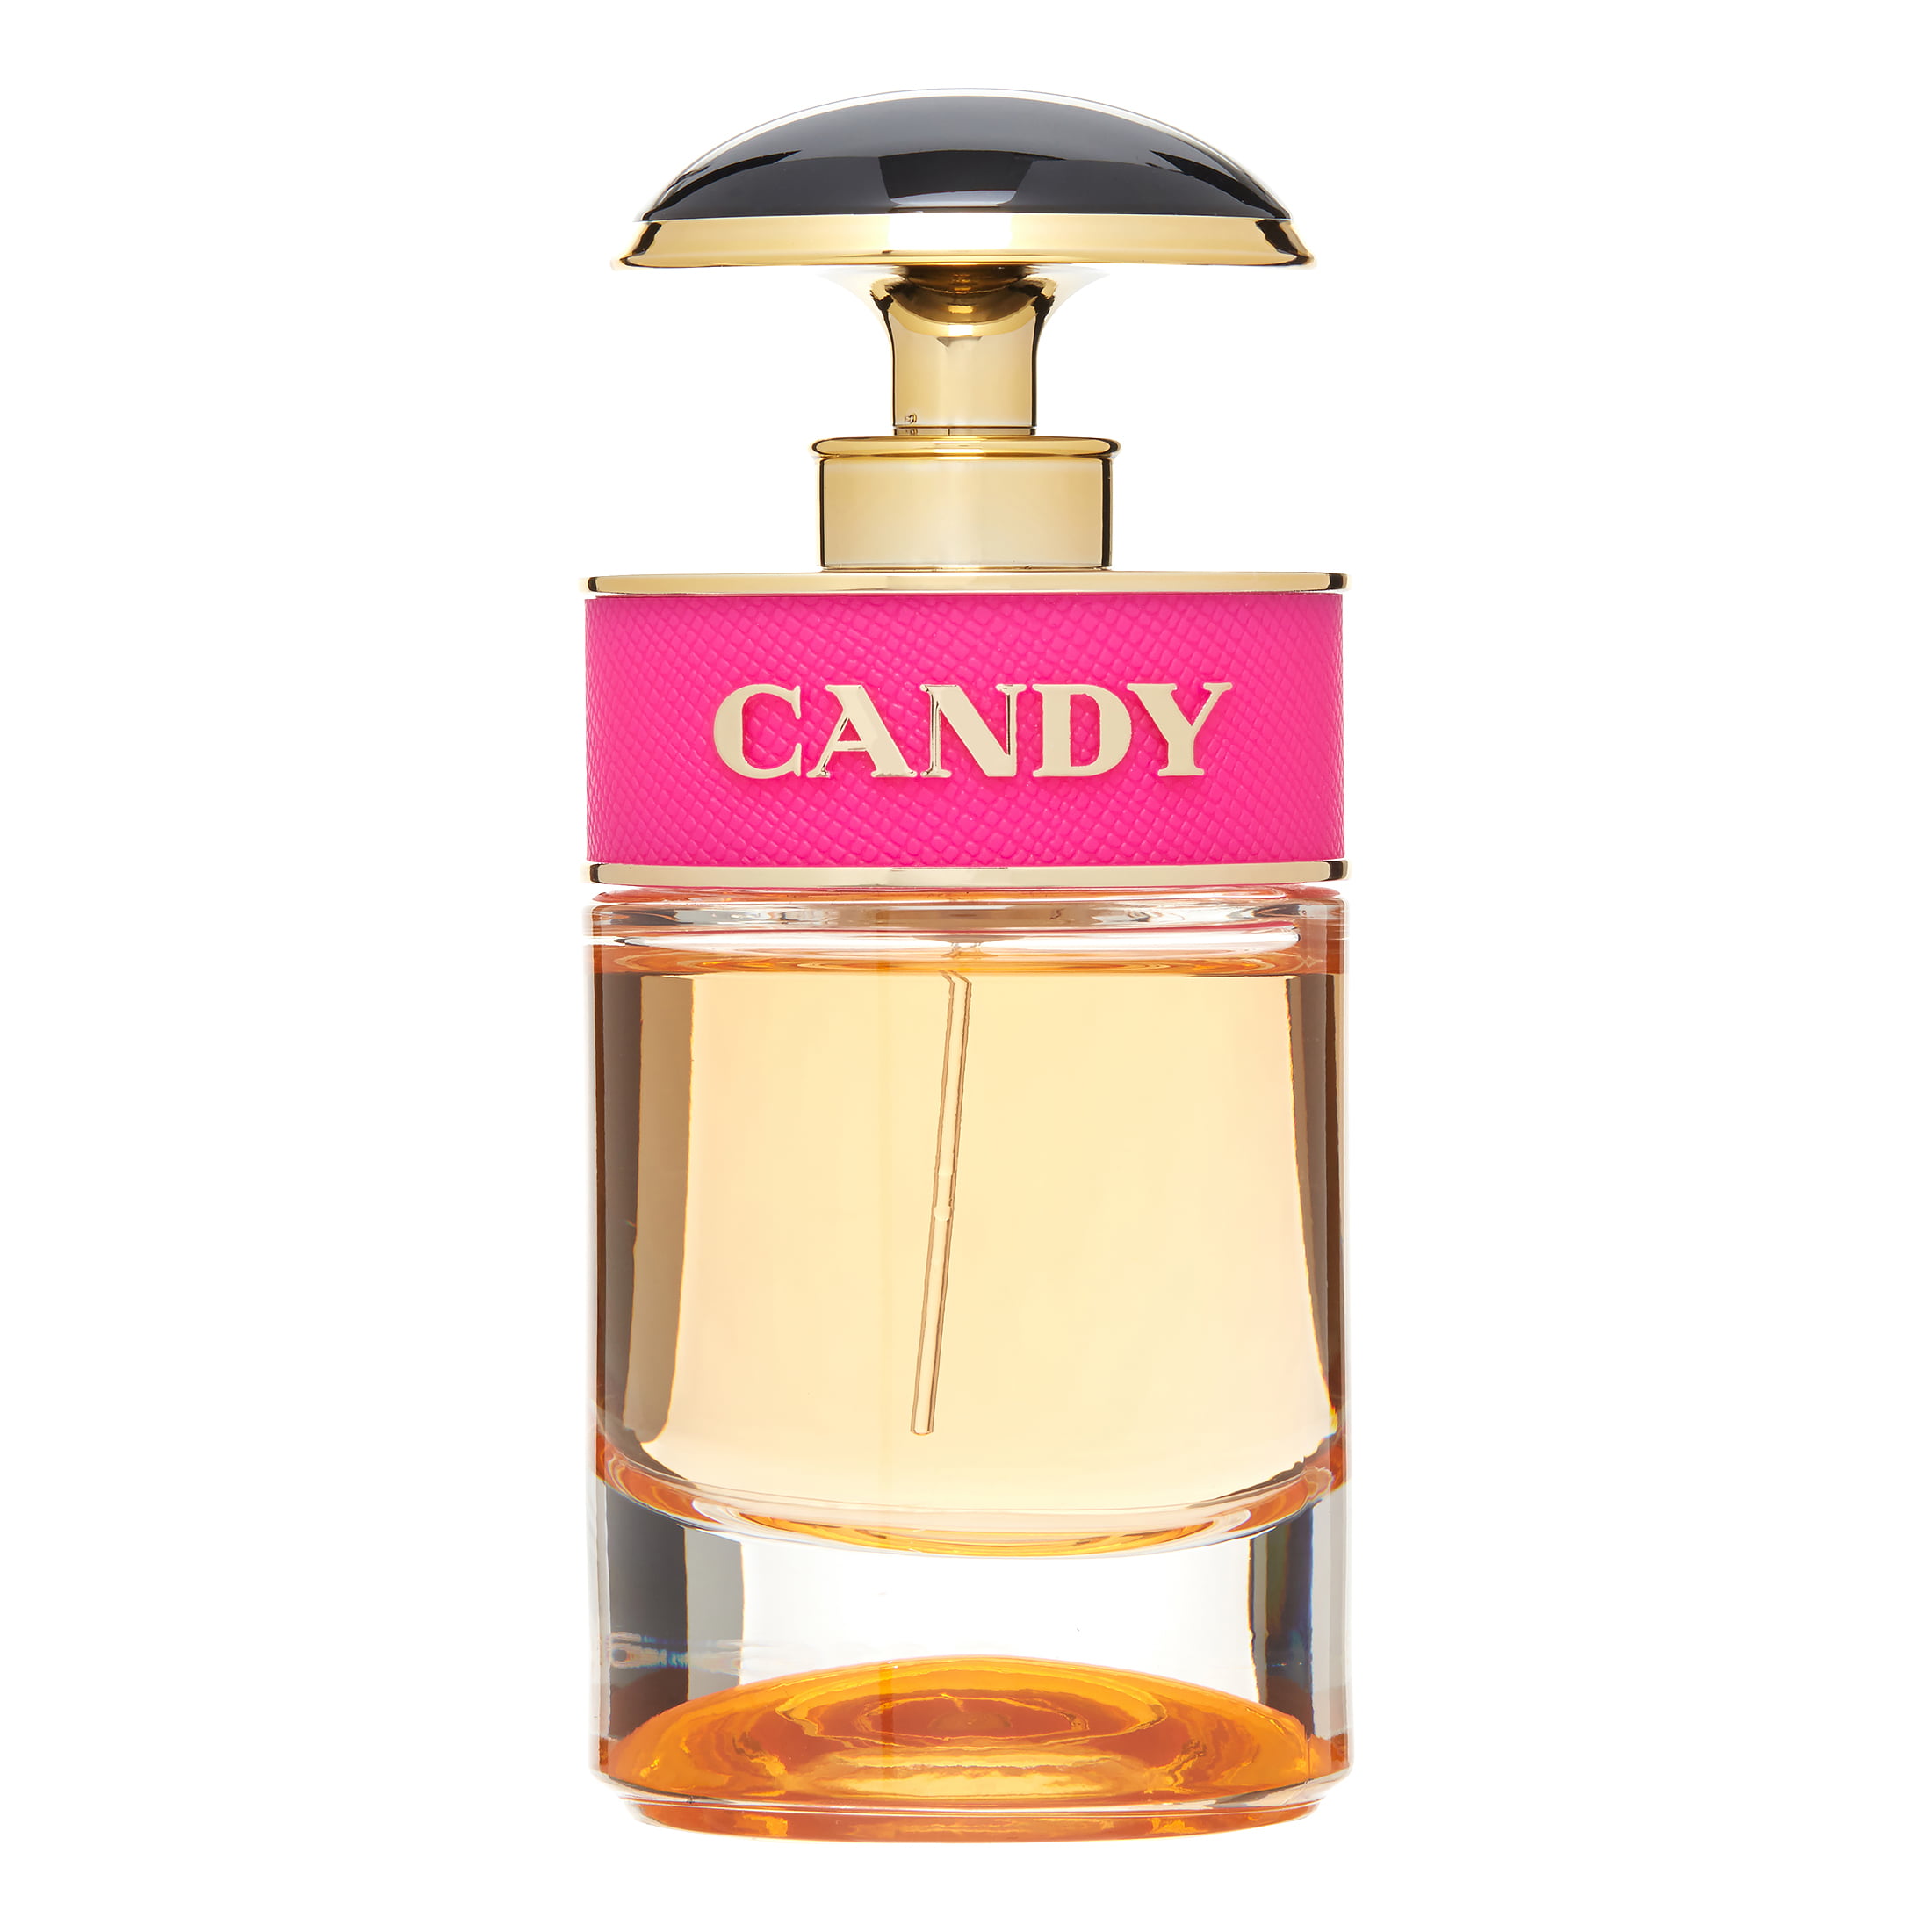 Prada Candy Eau De Parfum, Perfume For Women, 1 Oz 